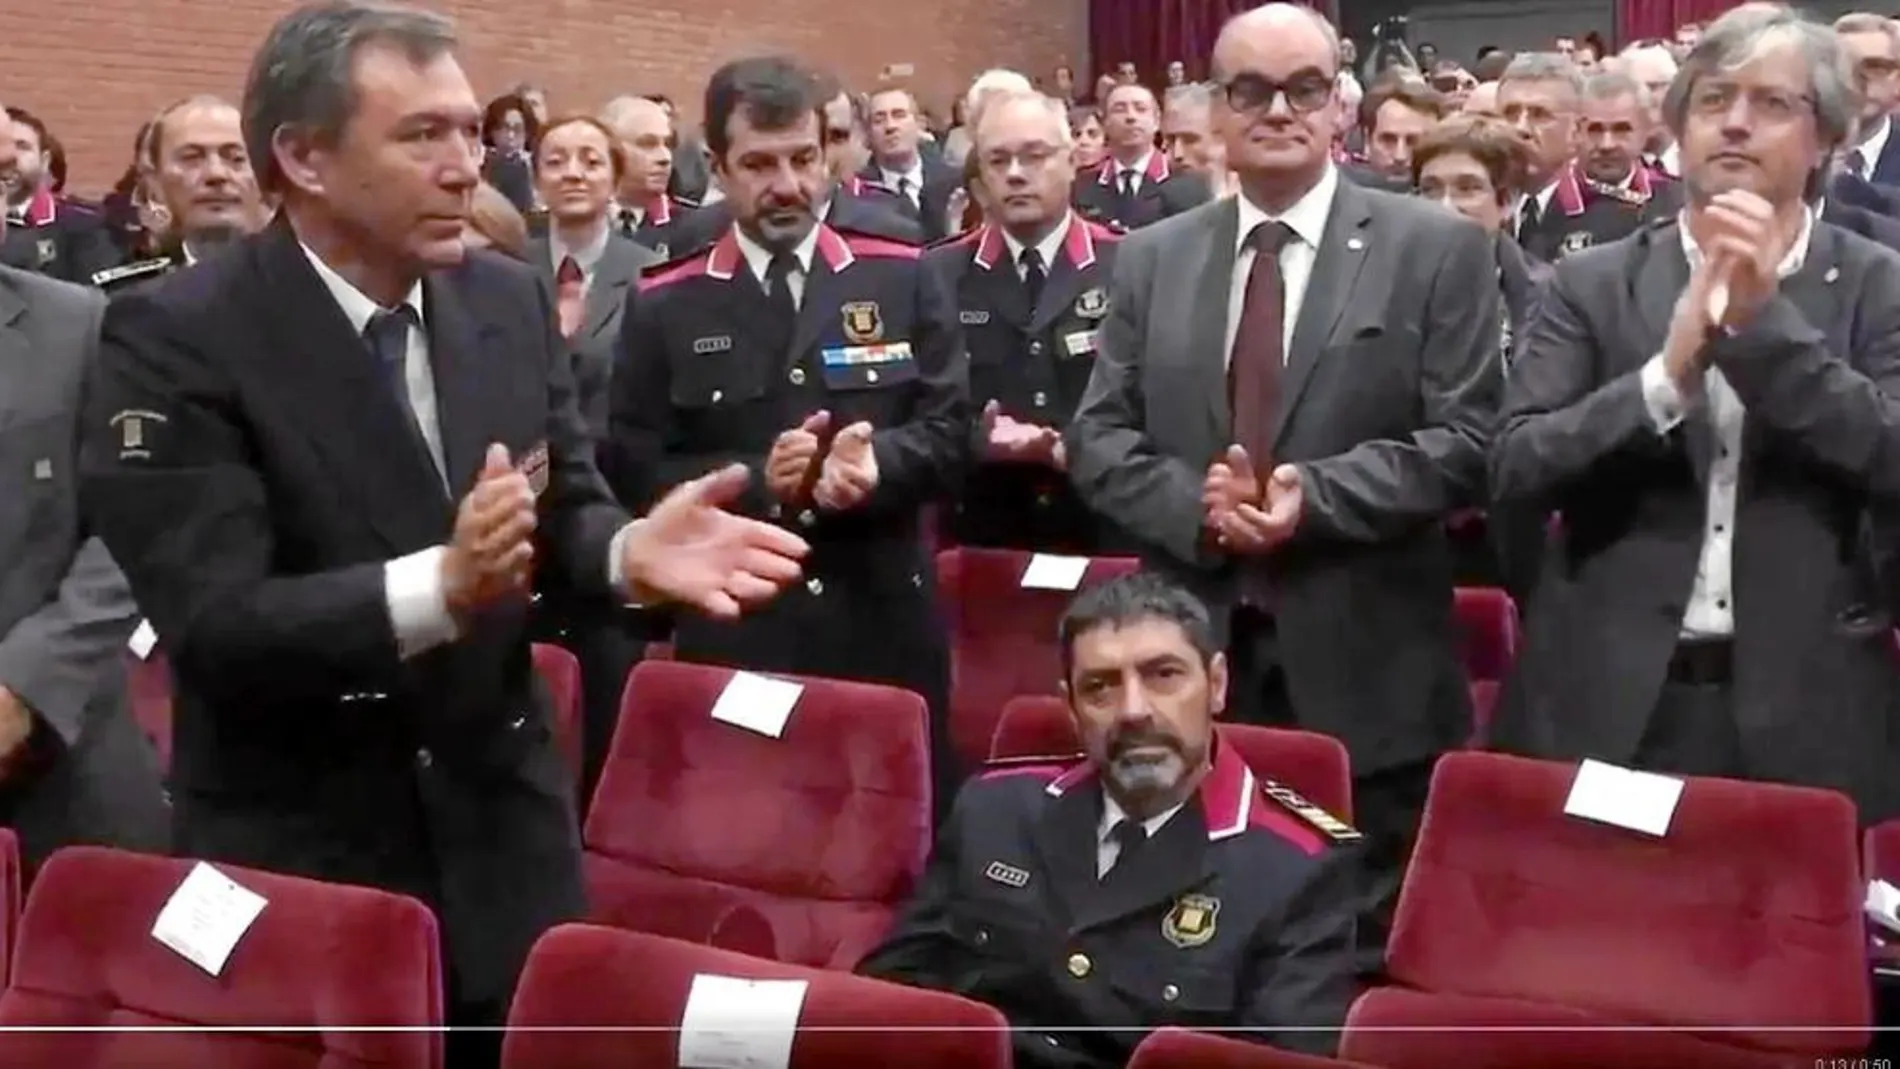 El mayor de los Mossos, Josep Lluís Trapero, fue ovacionado ayer en el inicio del nuevo curso de la academia, que contó con destacadas ausencias